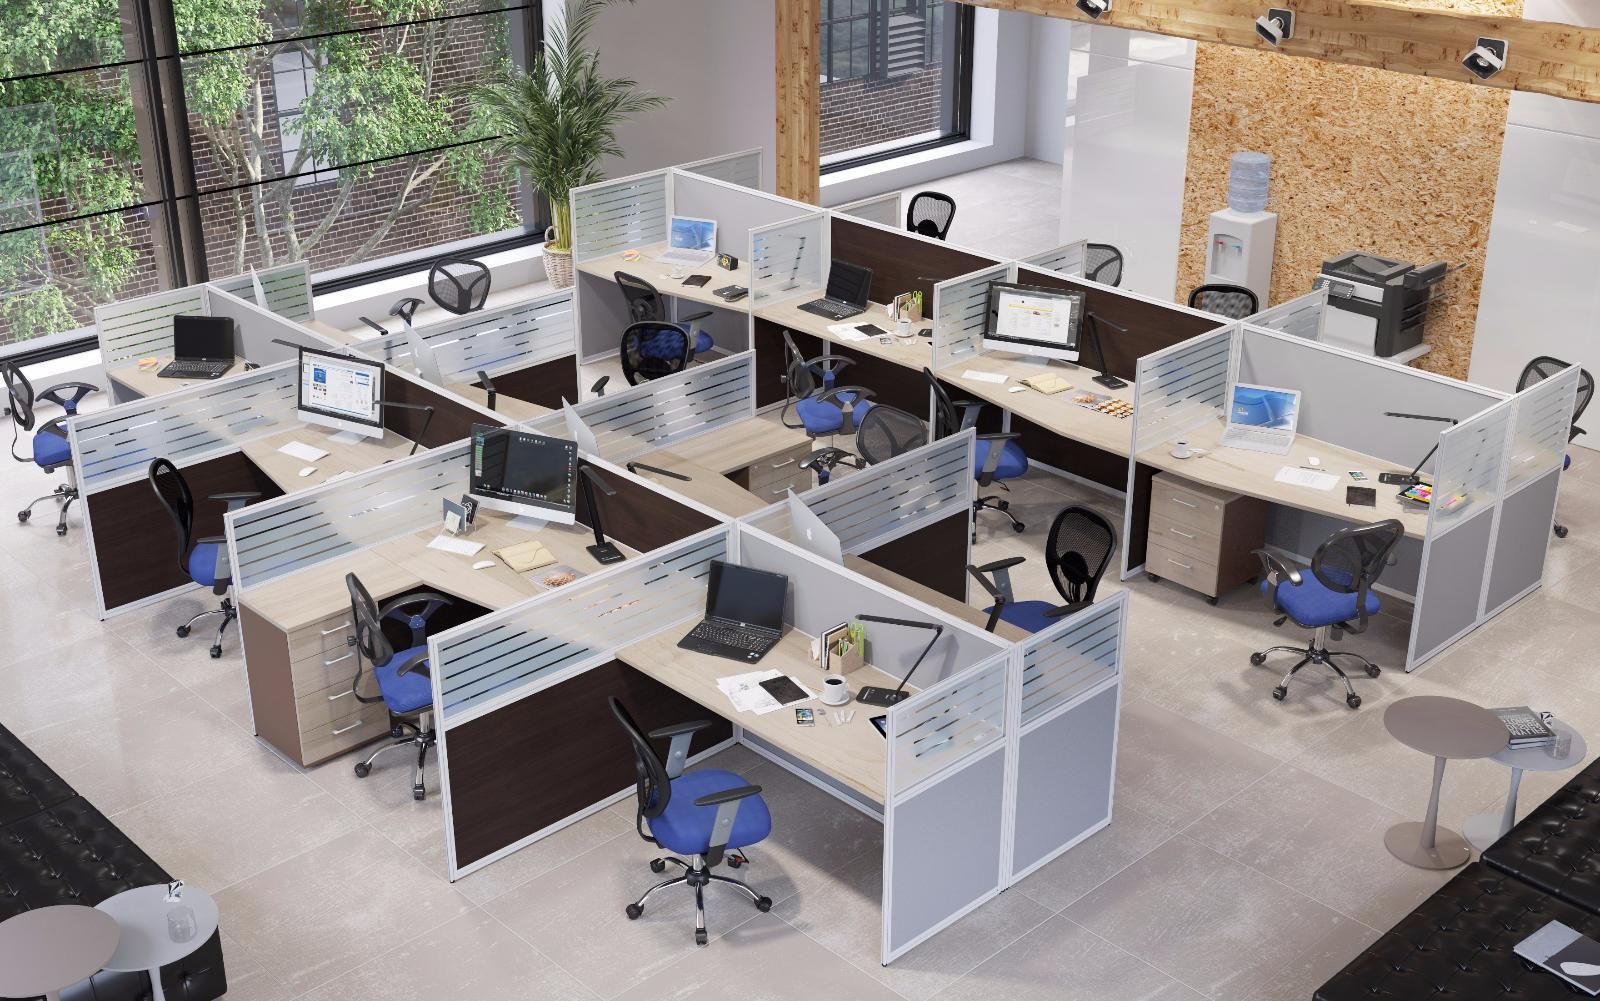 Intégration transparente : maximiser la compatibilité du mobilier de bureau pour une productivité améliorée